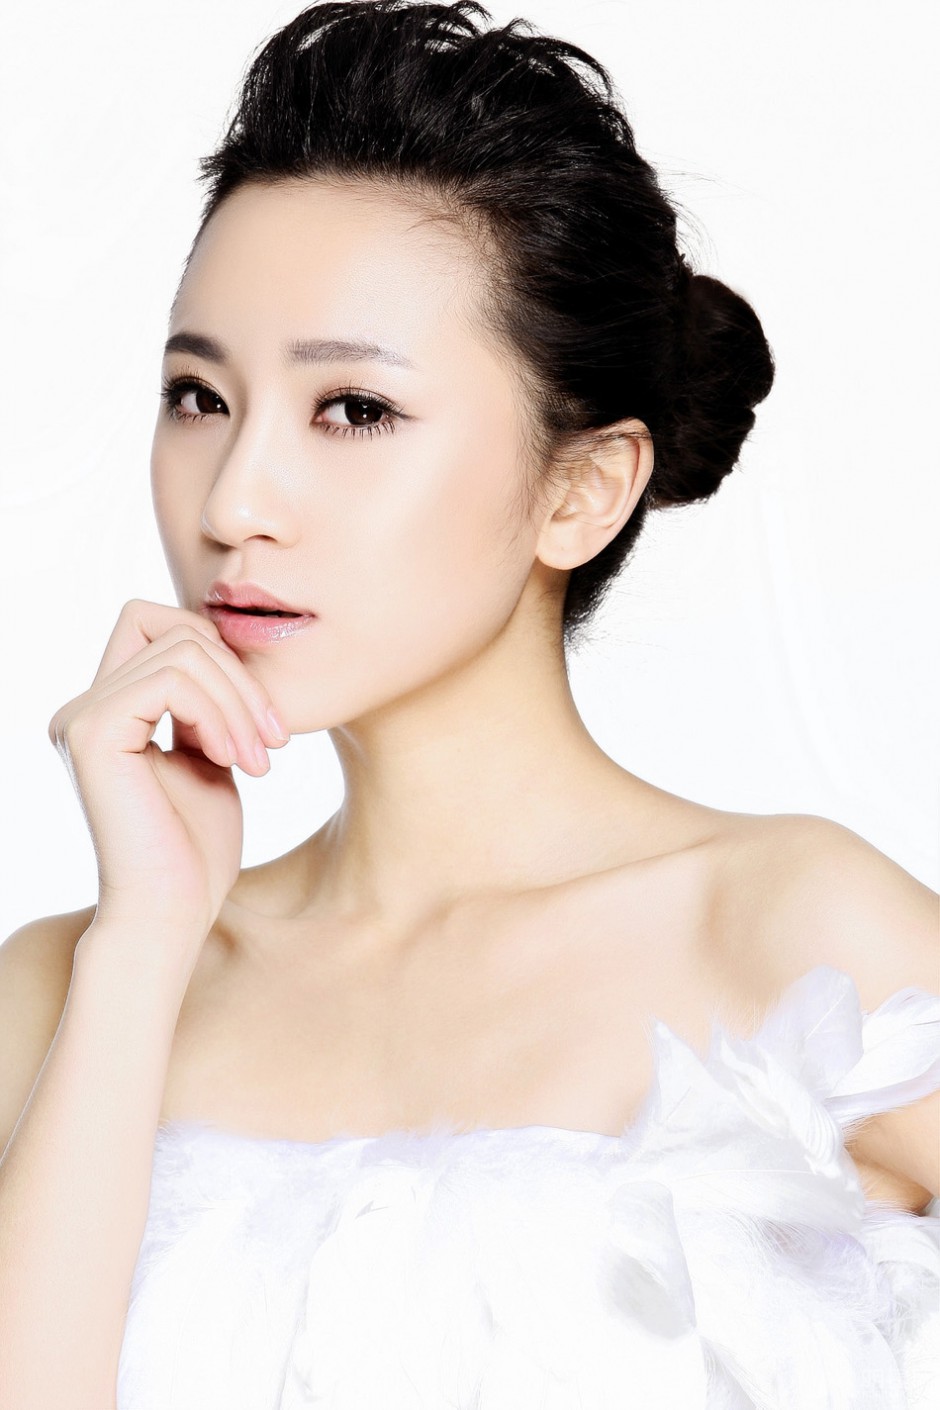 中国最漂亮女演员解惠清靓丽写真